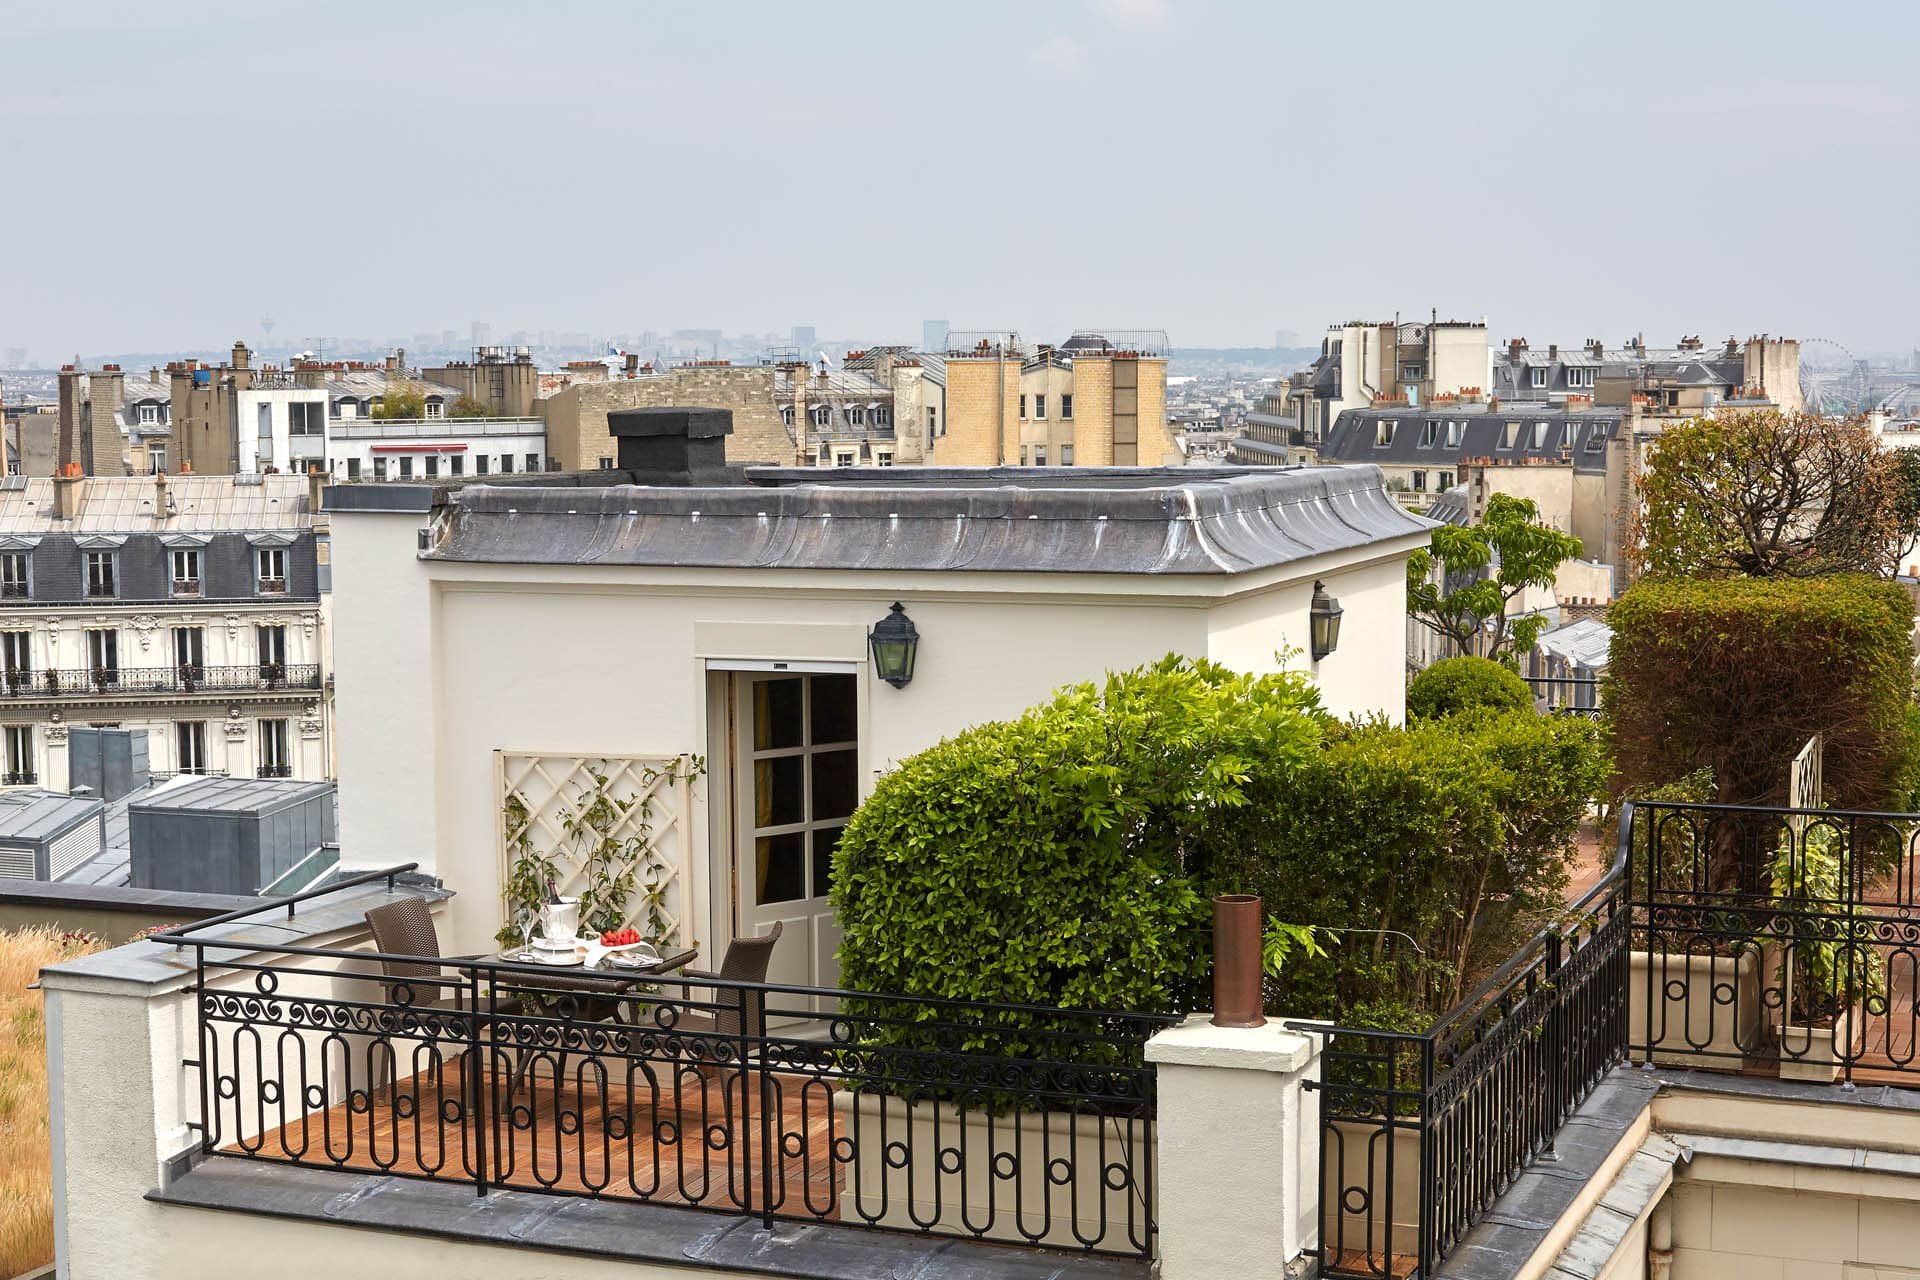 Hotel Raphael Parisian Suite Terrace Eiffel Tower - Arc de Triomphe